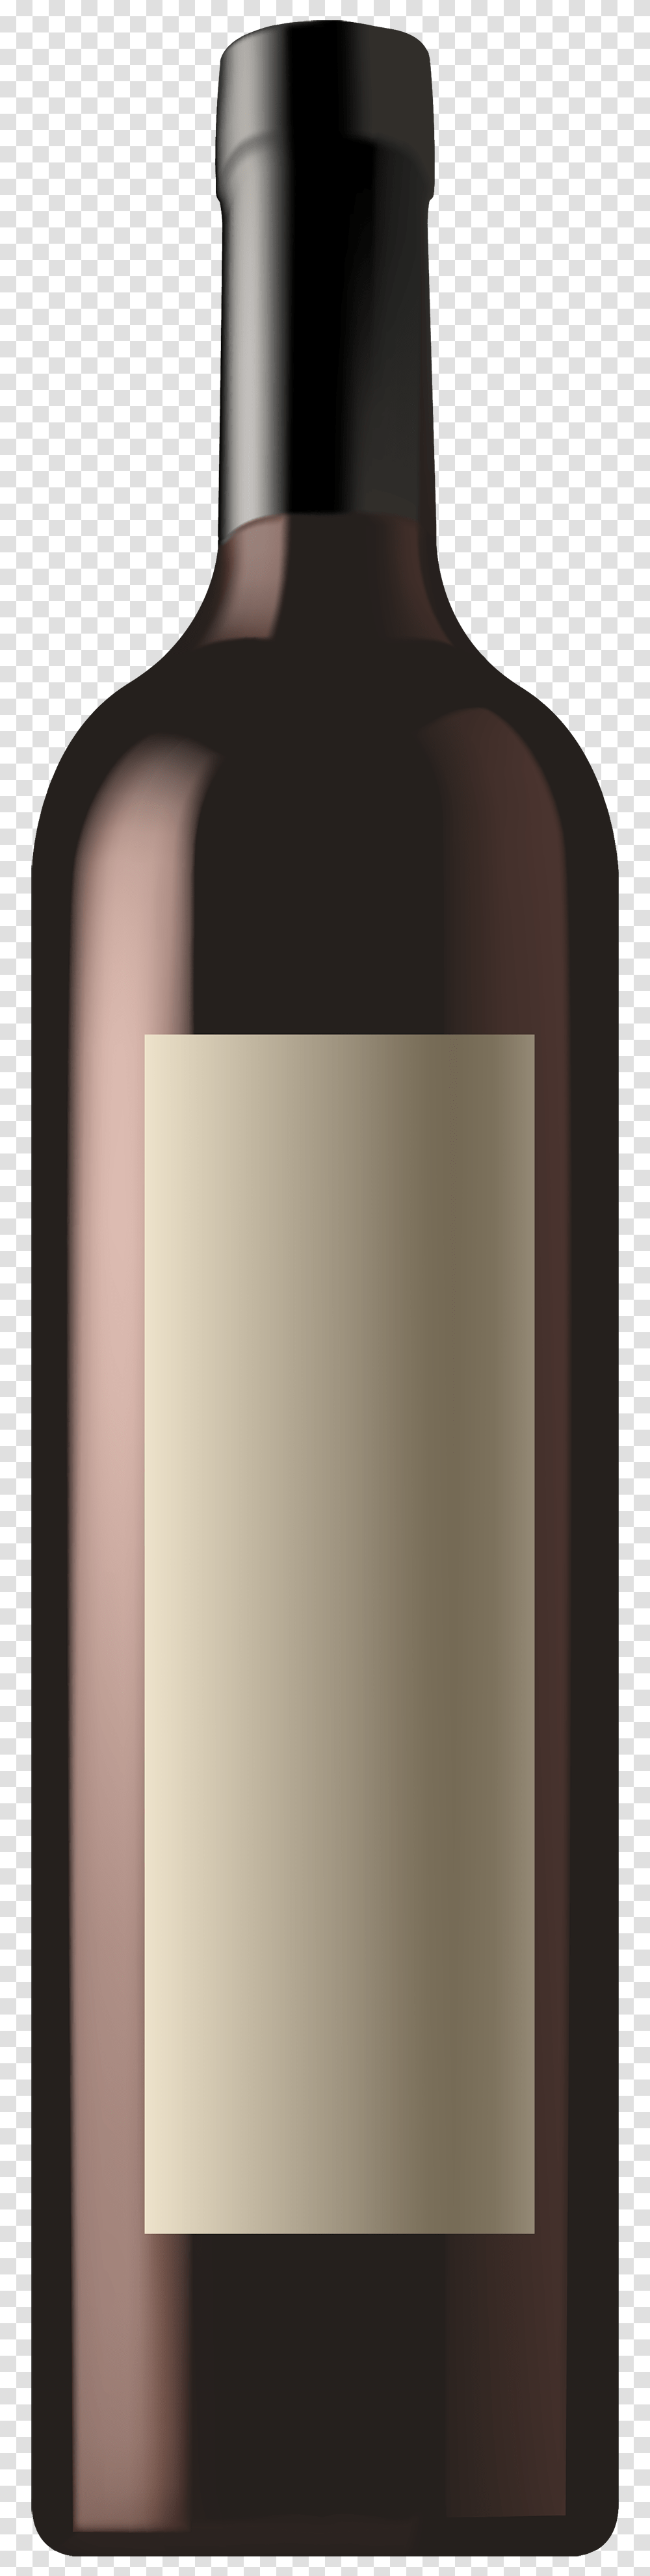 Red Wine Bottle Clipart Image, Alcohol, Beverage, Drink Transparent Png